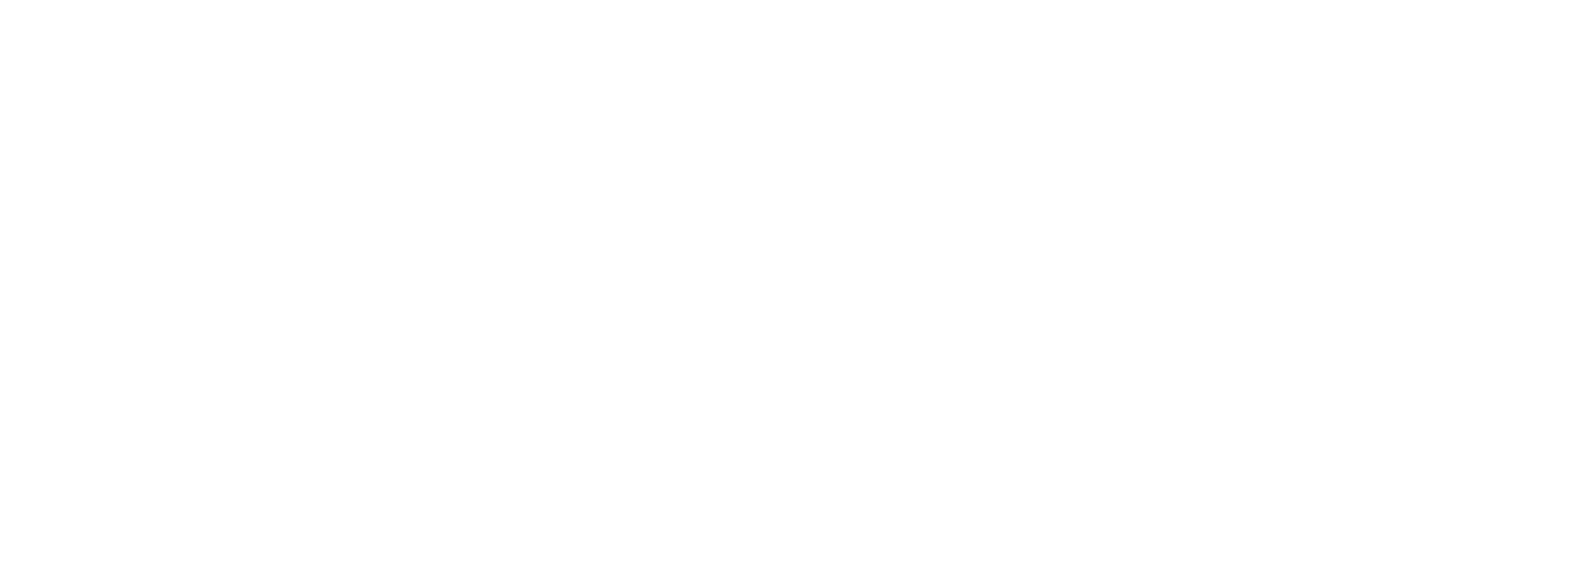 True Corporation logo pour fonds sombres (PNG transparent)